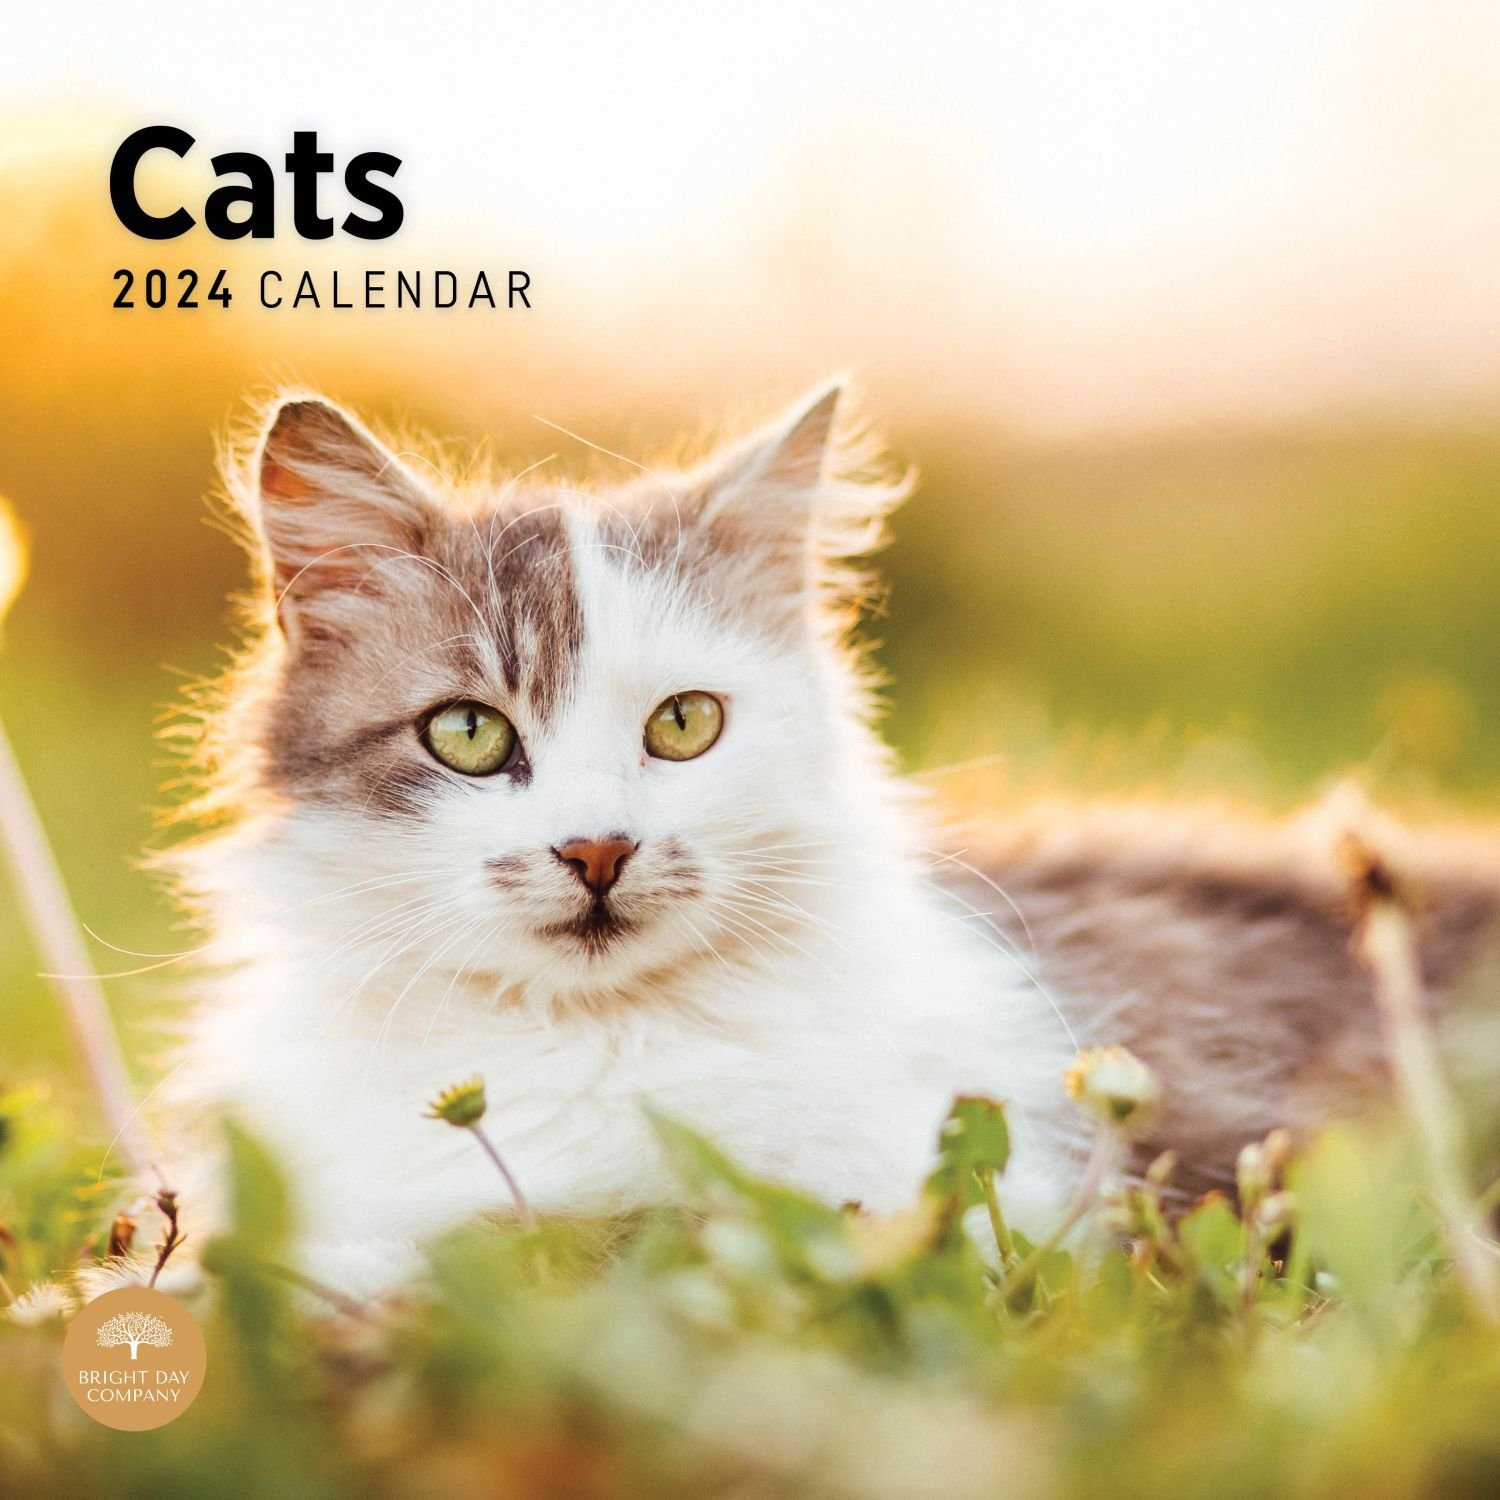 Cats 2024 Wall Calendar